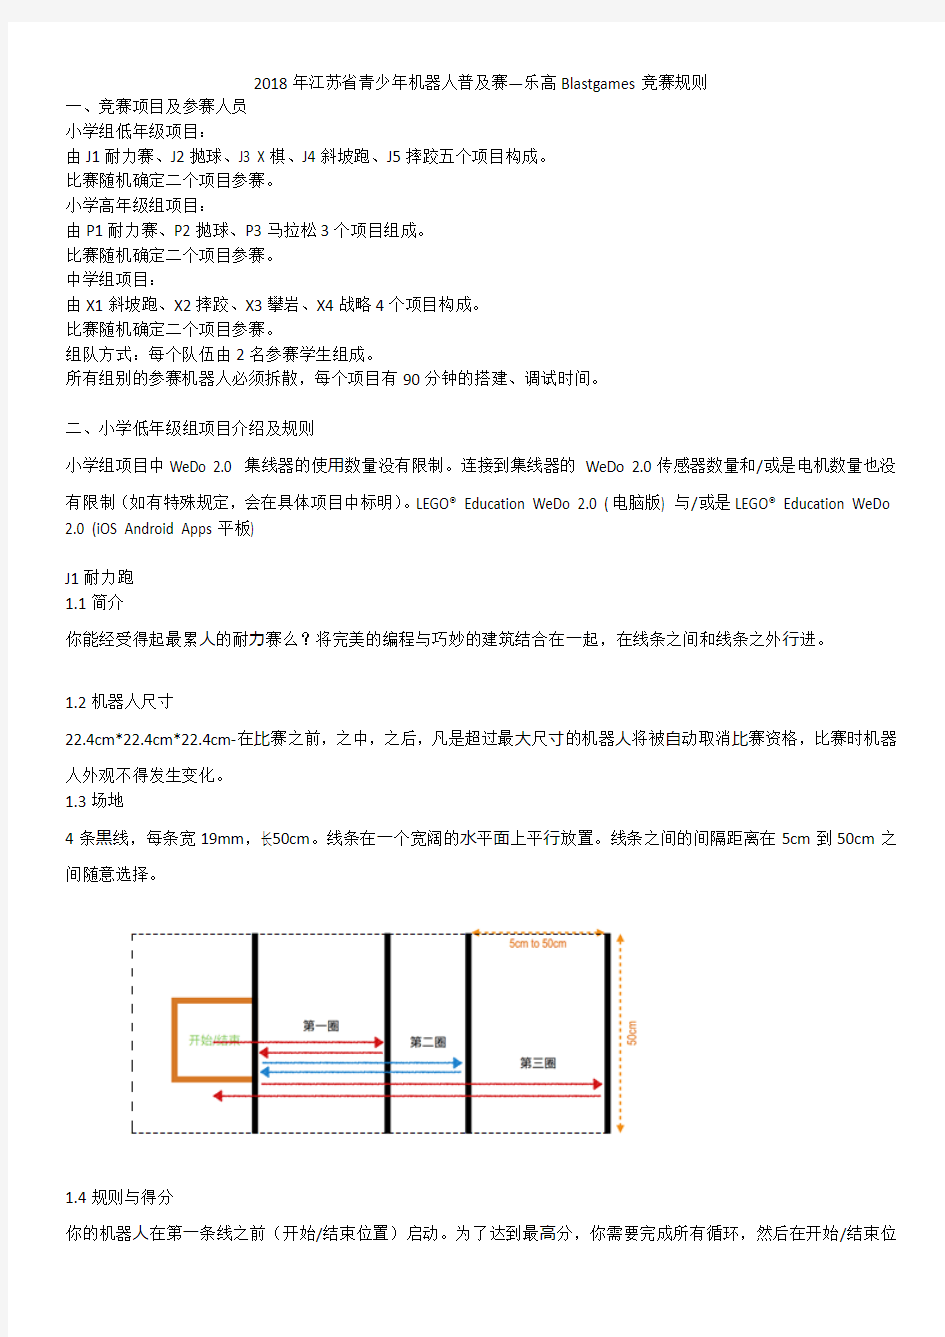 2018年江苏省青少年机器人普及赛乐高Blastgames竞赛规则